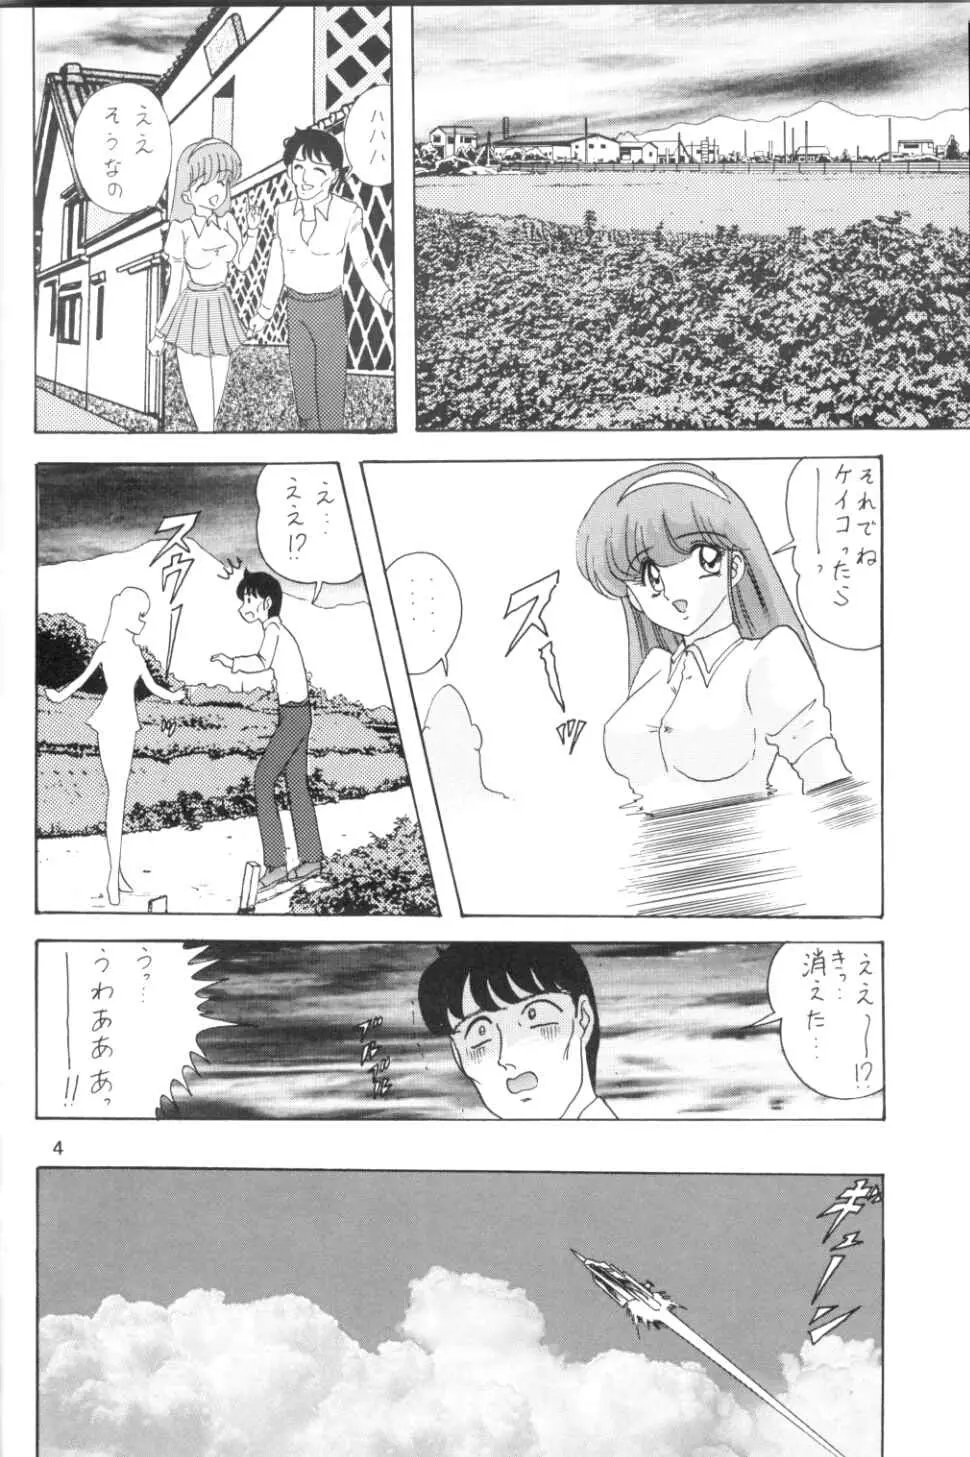 [関東うさぎ組 (上藤政樹)] U-7-X (ウルトラマン) - page5